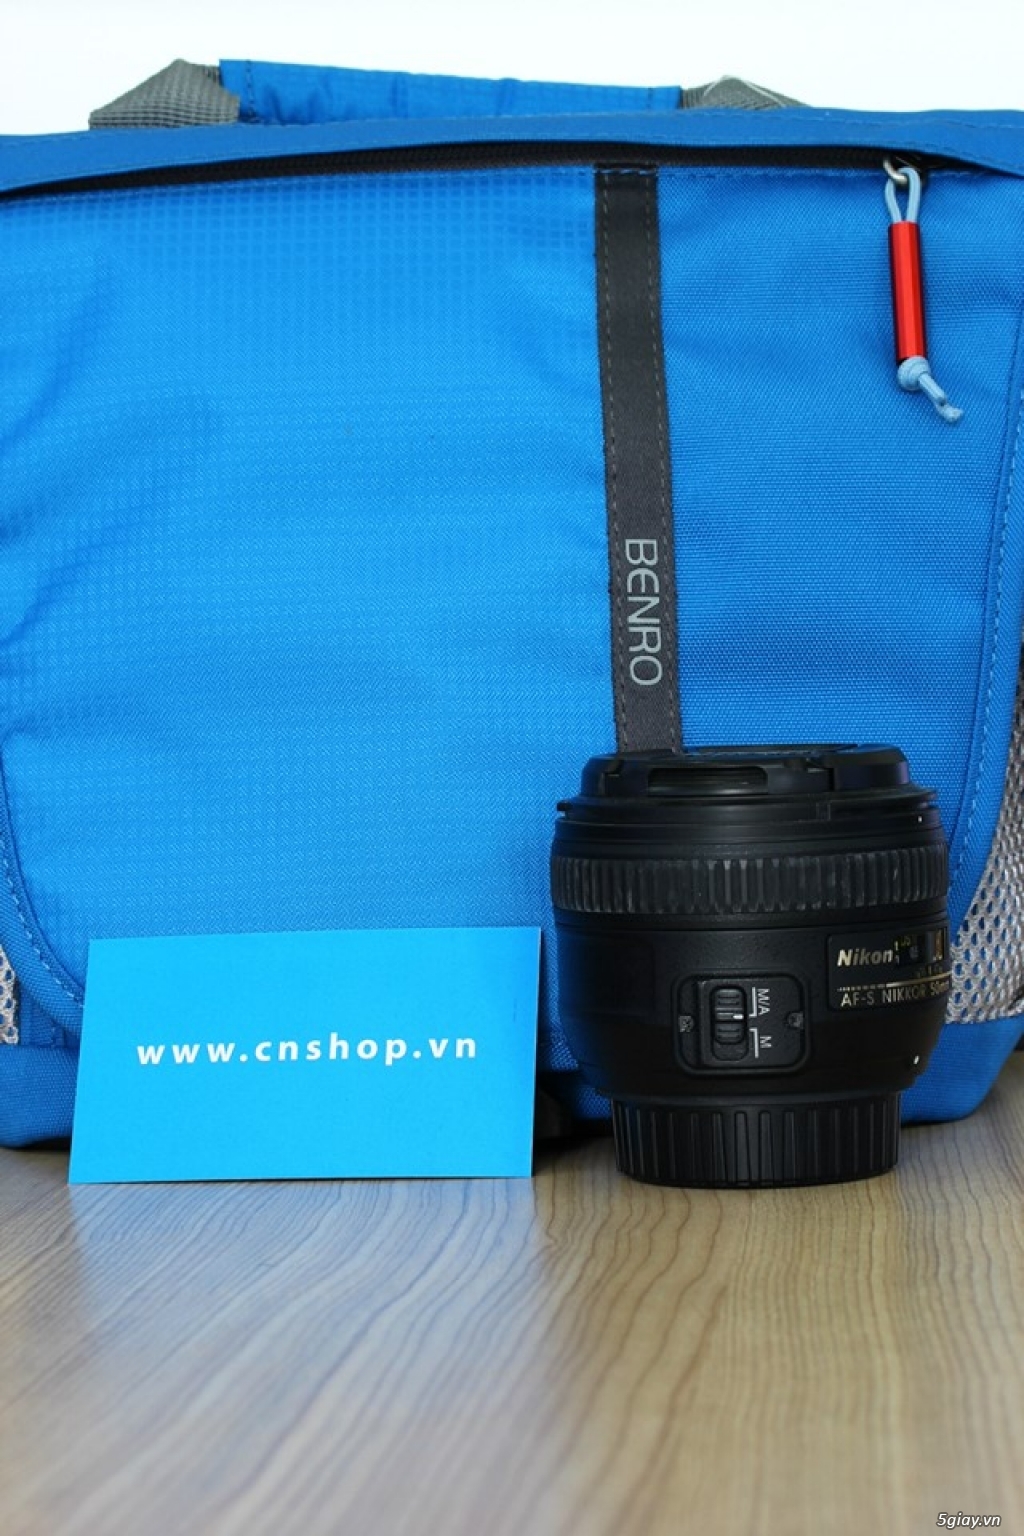 Cần bán Nikon AF-S 50mm f/1.4G nguyên zin tại cnshop.vn